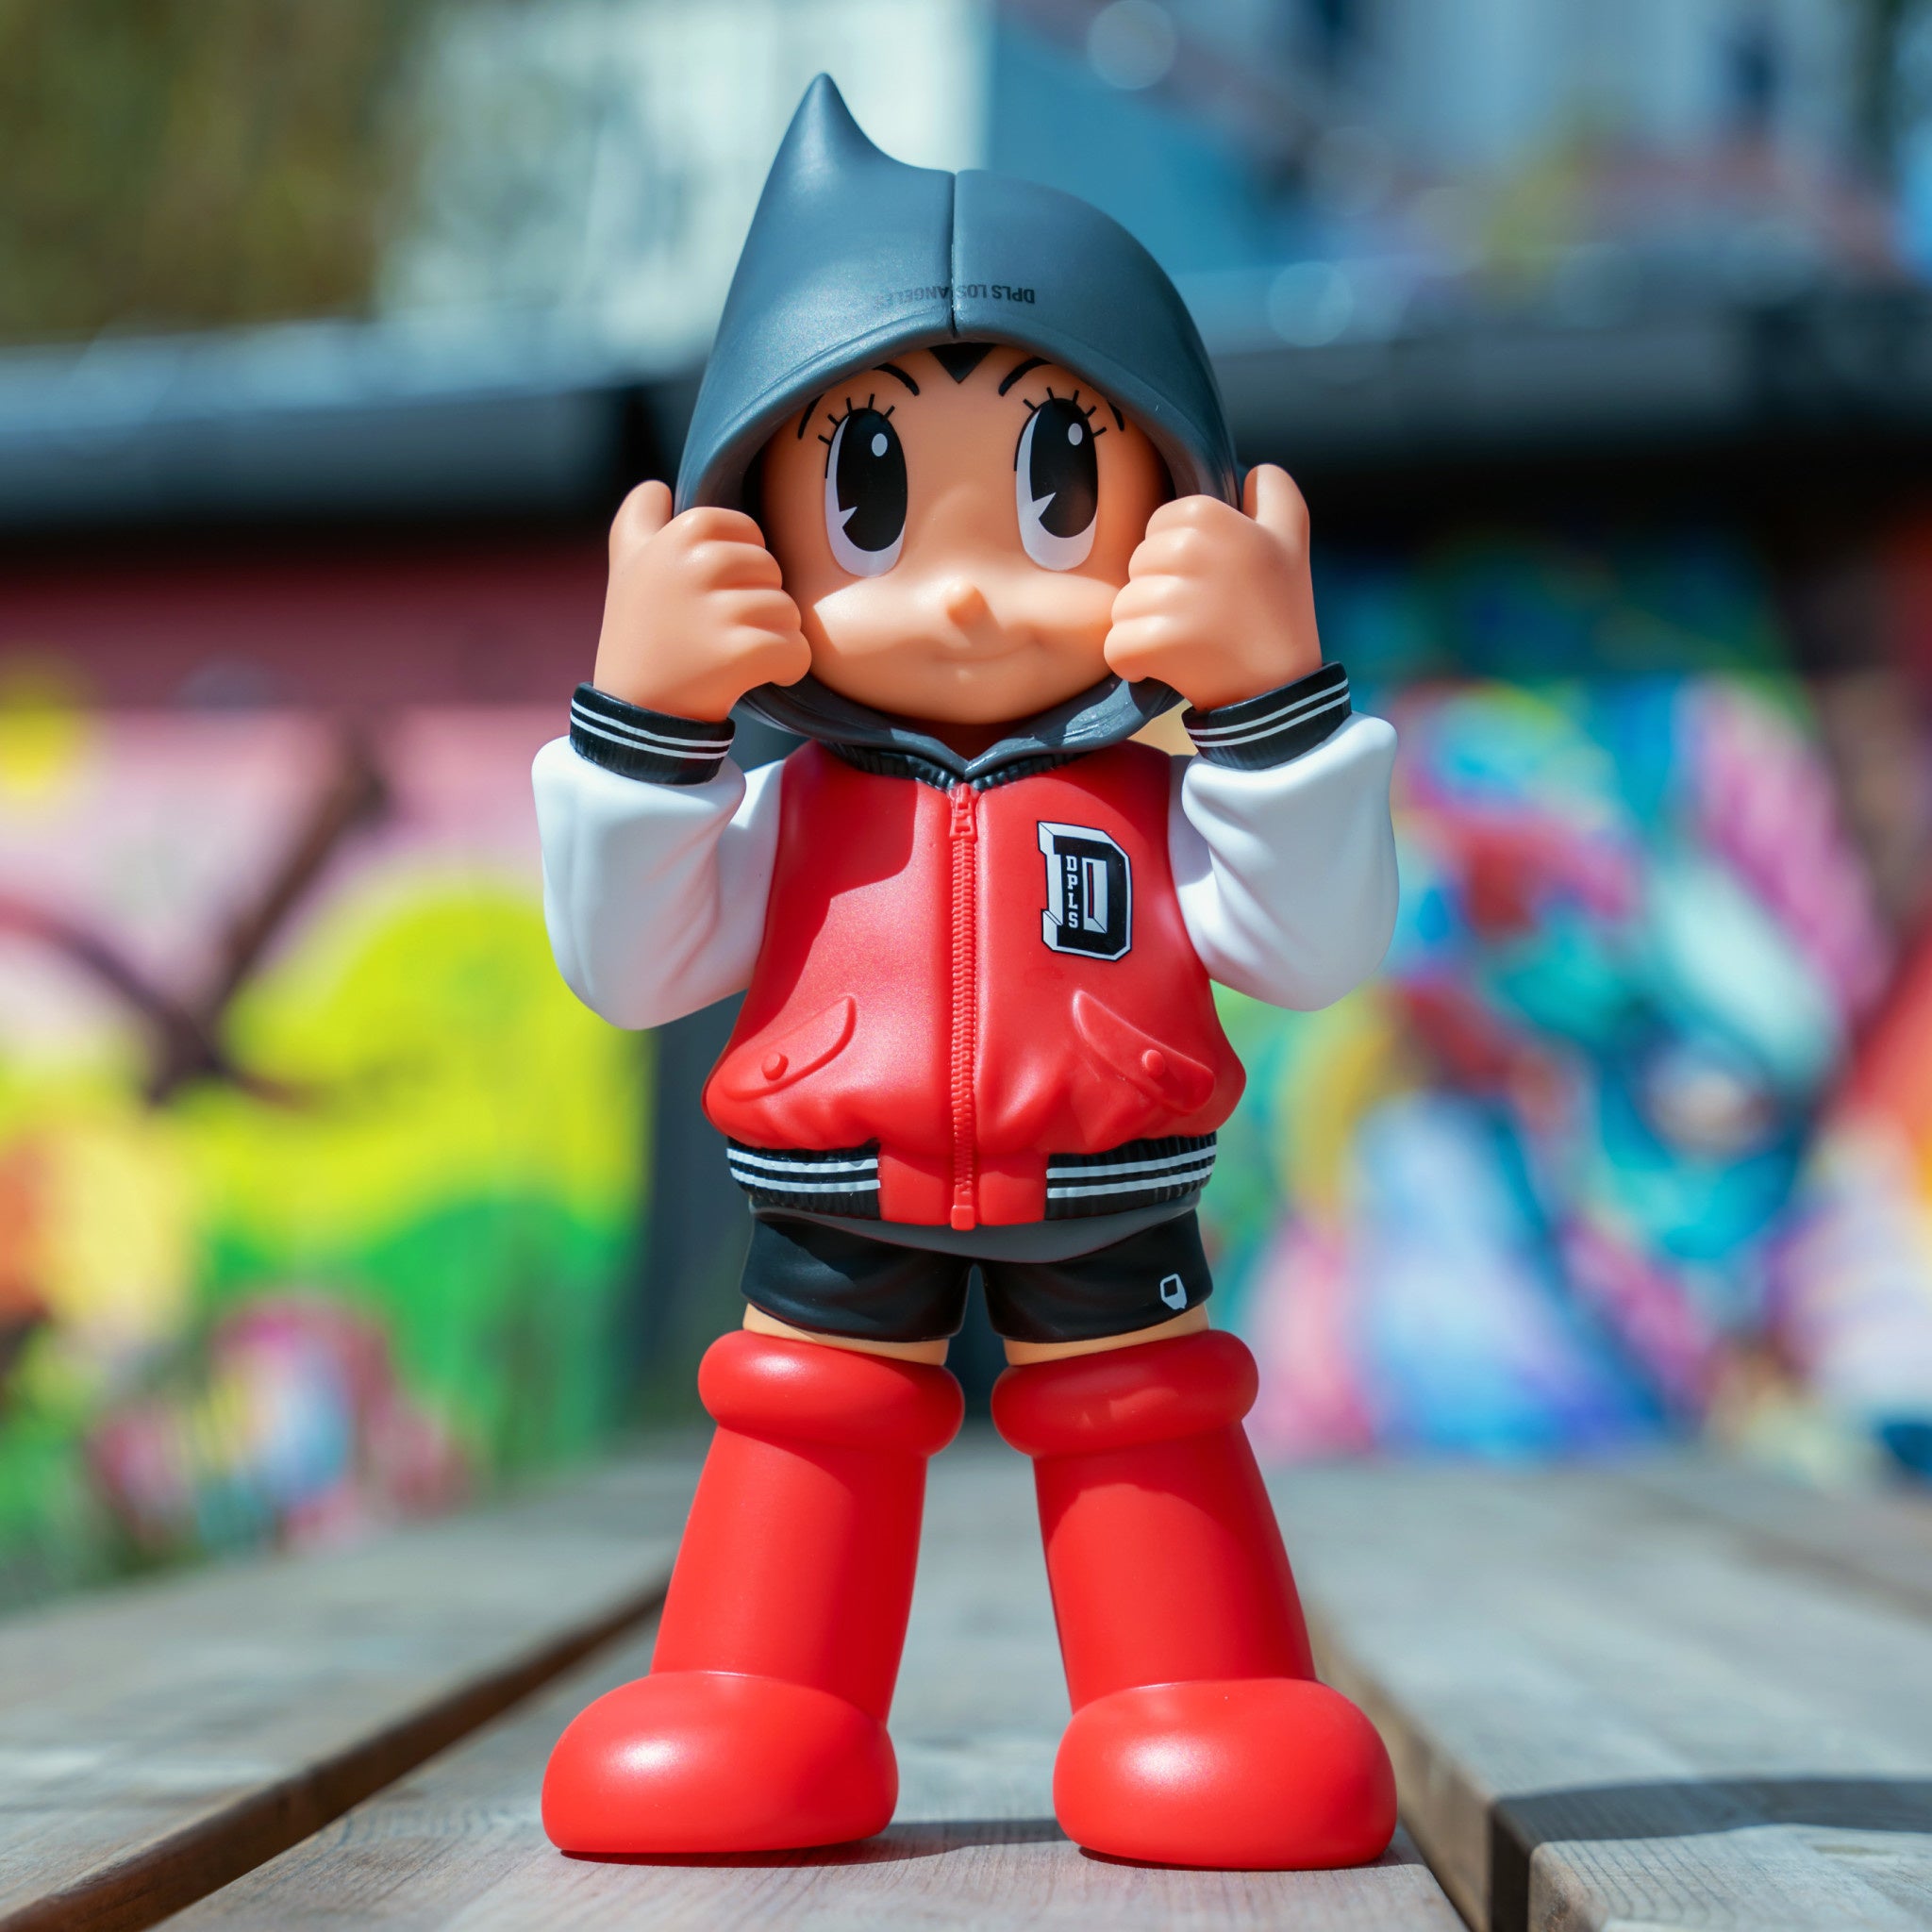 Astro Boy Hoodie DPLS Team Red 10 inch - Wynwood Walls Shop